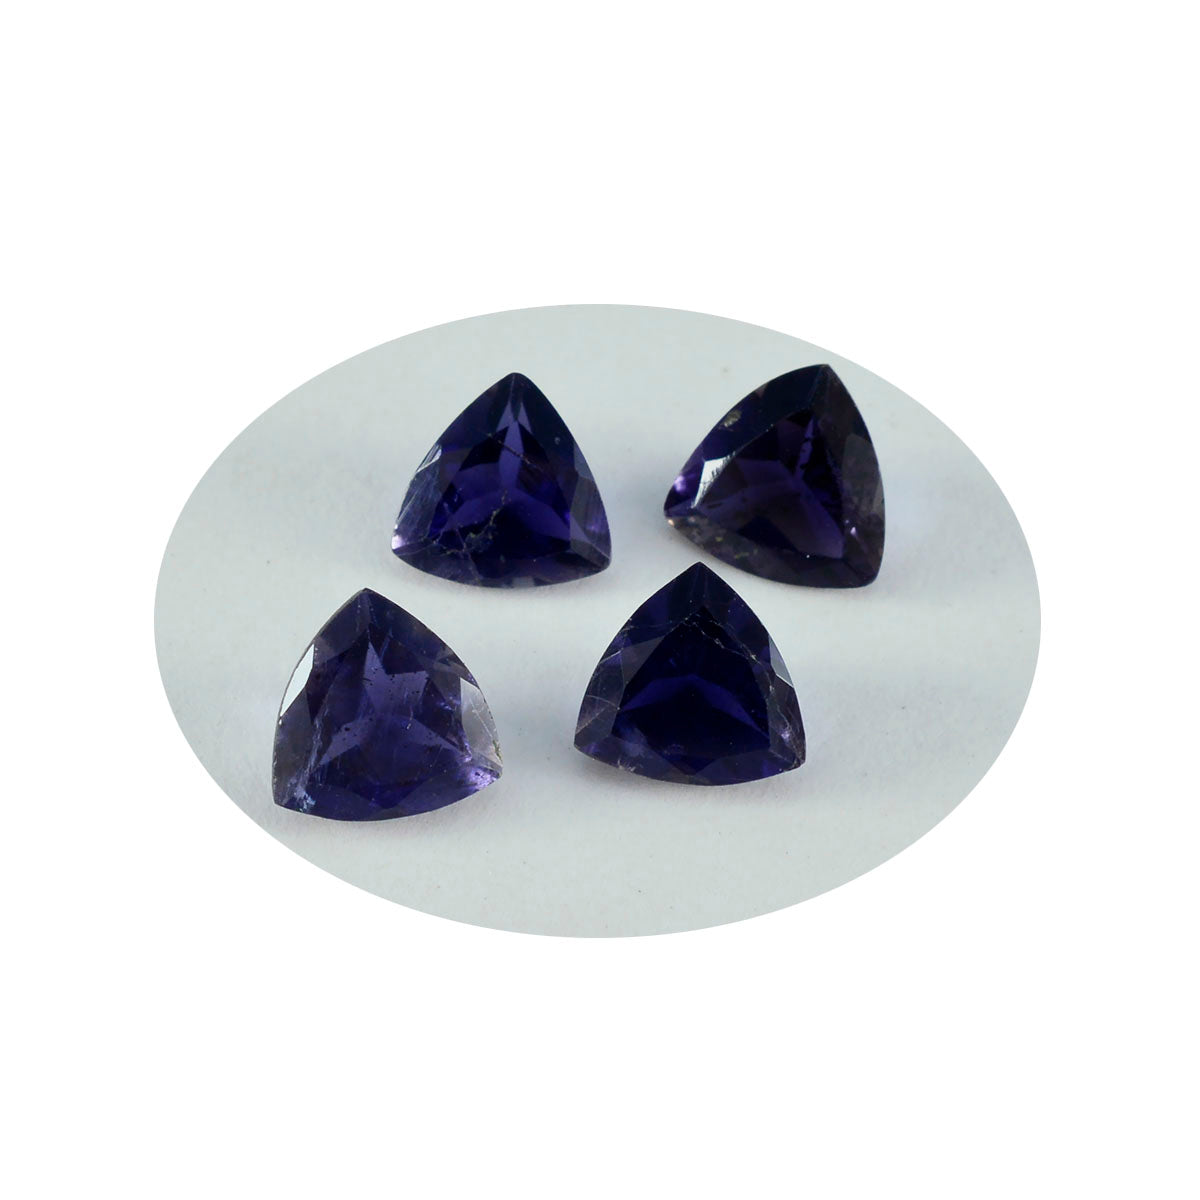 riyogems 1 шт. синий иолит граненый 14x14 мм форма триллион замечательное качество свободный камень